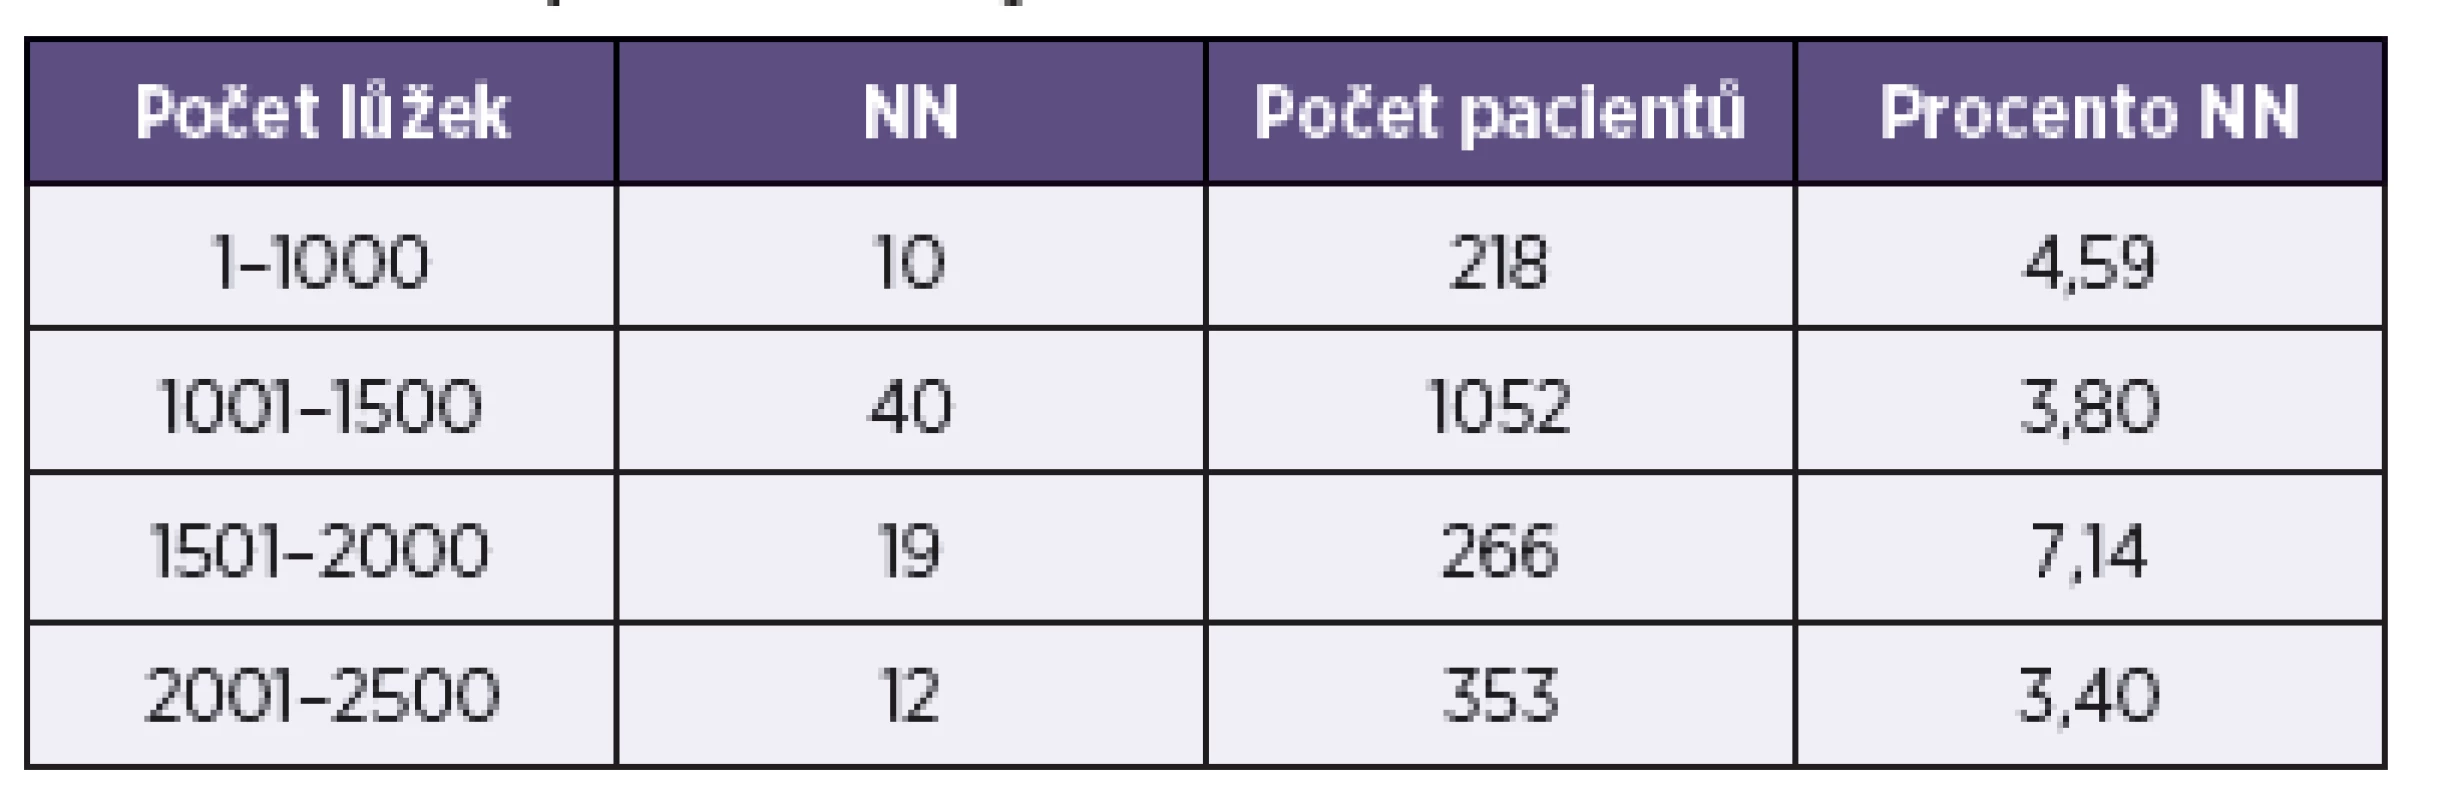 Prevalence NN podle počtu lůžek
Table 2. NI prevalence by number of beds